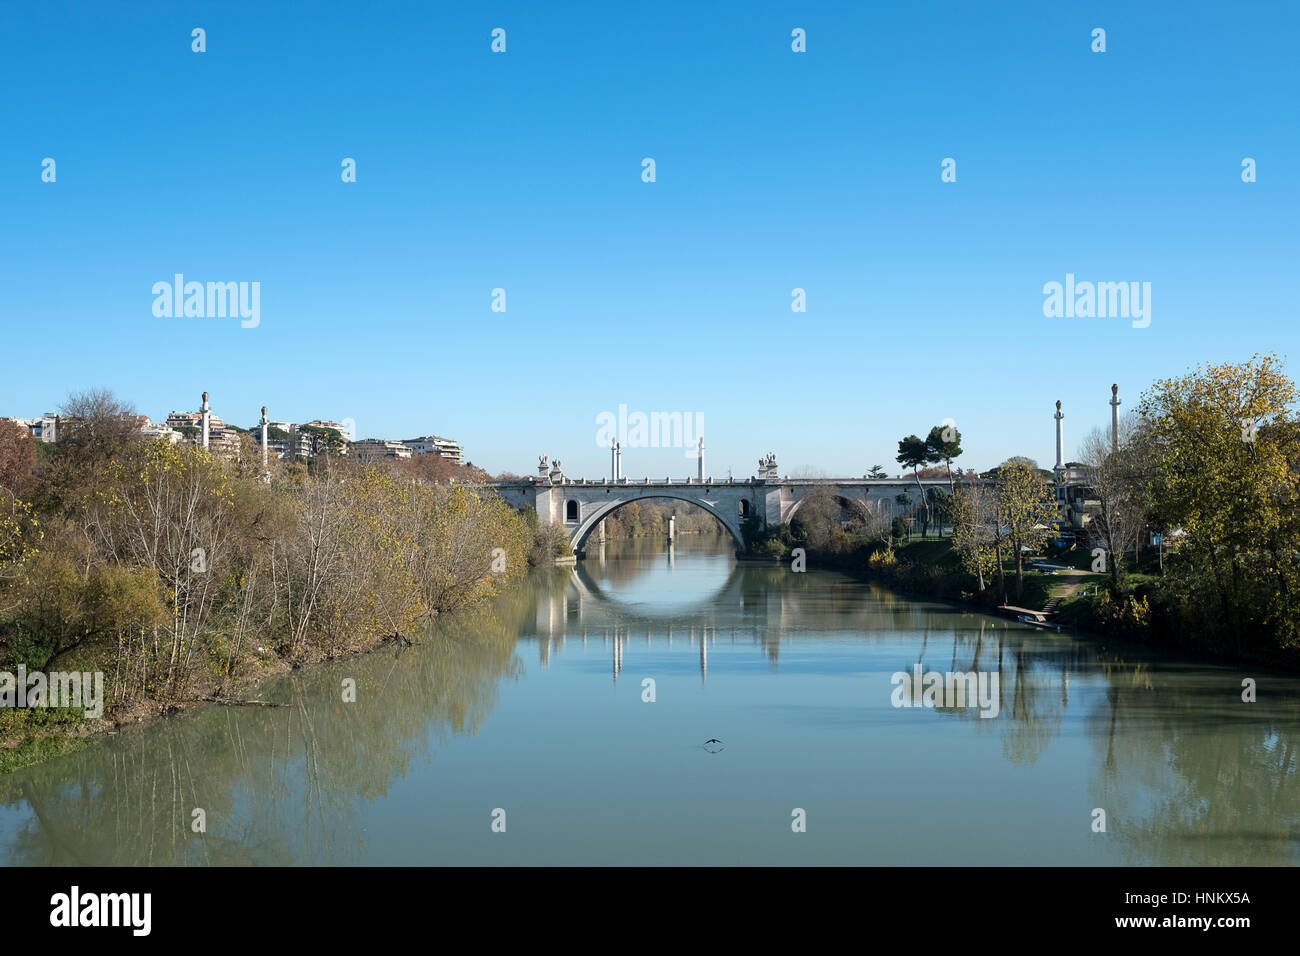 Flaminio bridge taken from Milvio bridge. Rome, Italy Stock Photo